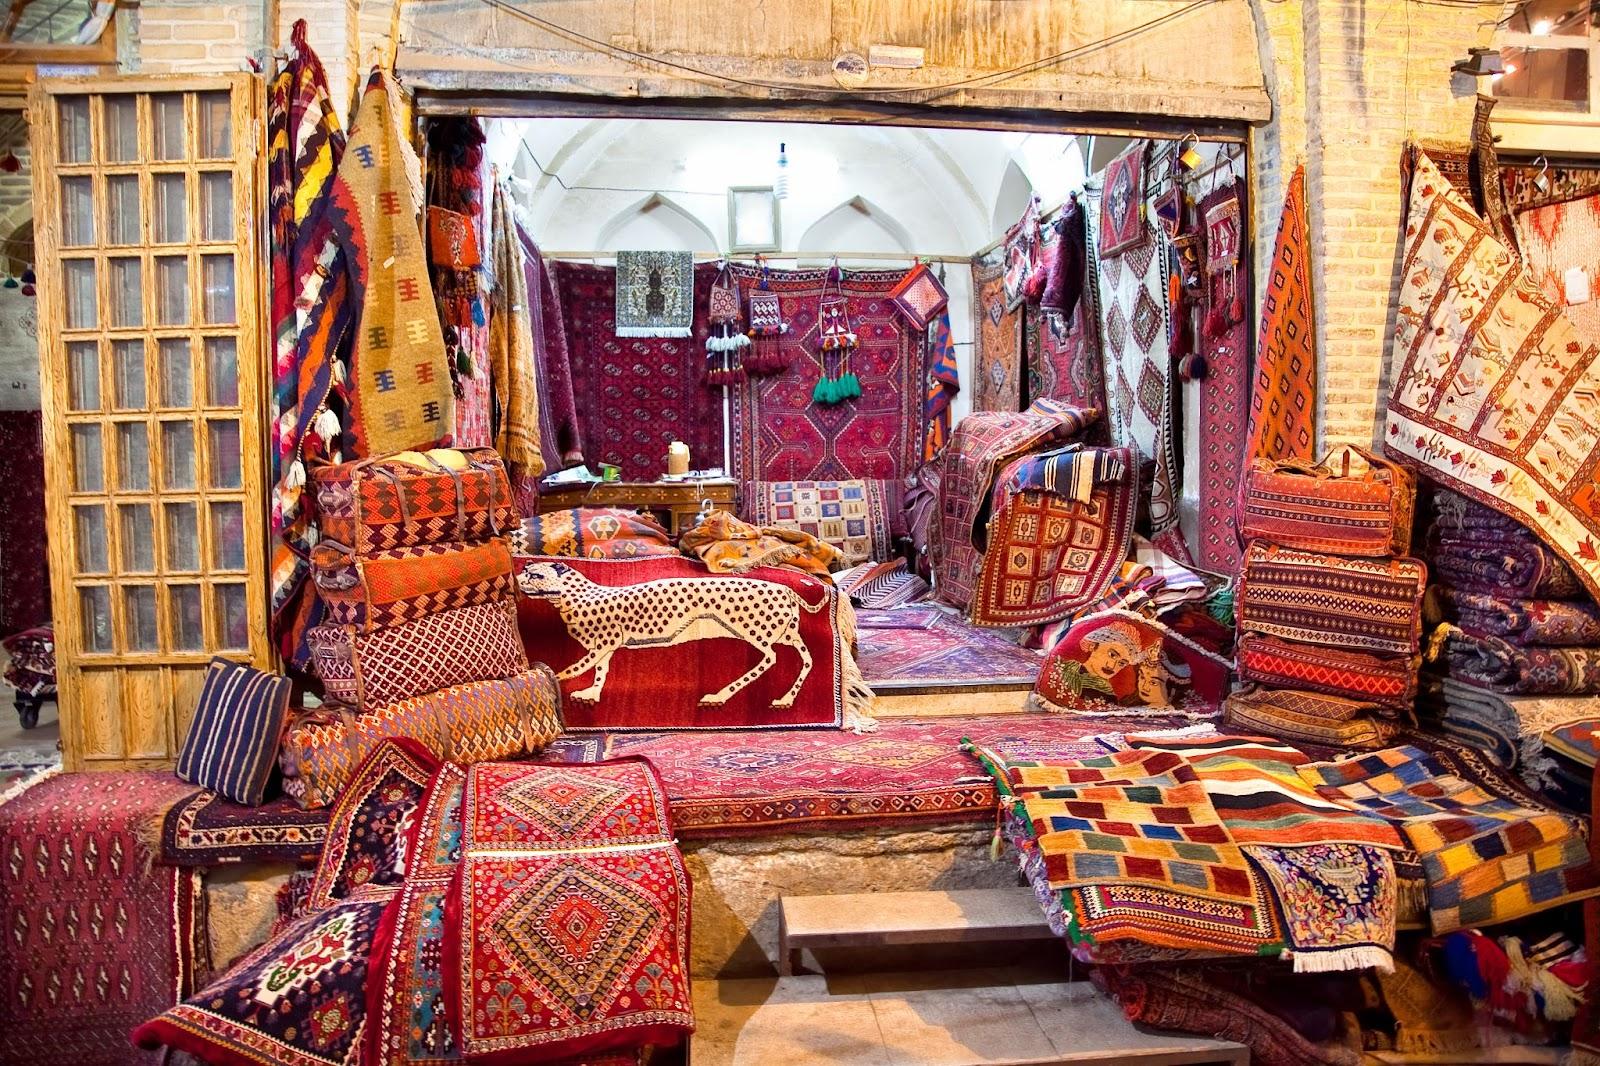 Shop of Persian carpets (Iranian carpets and rugs), Shiraz, Iran